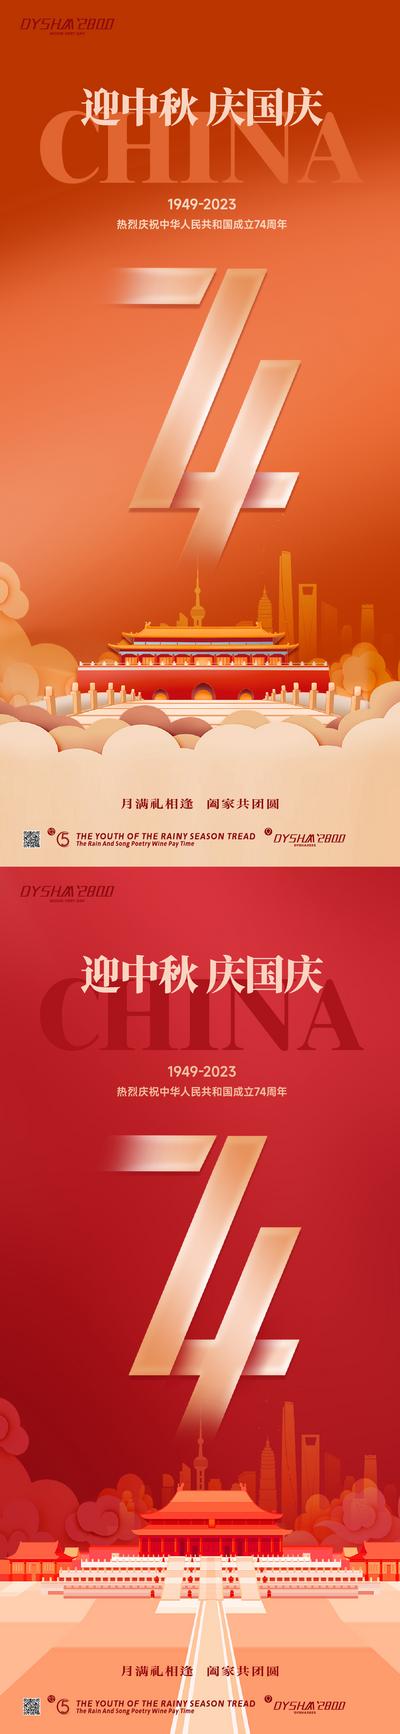 南门网 广告 海报 节日 中秋 74 国庆 天安门 周年 系列 红金